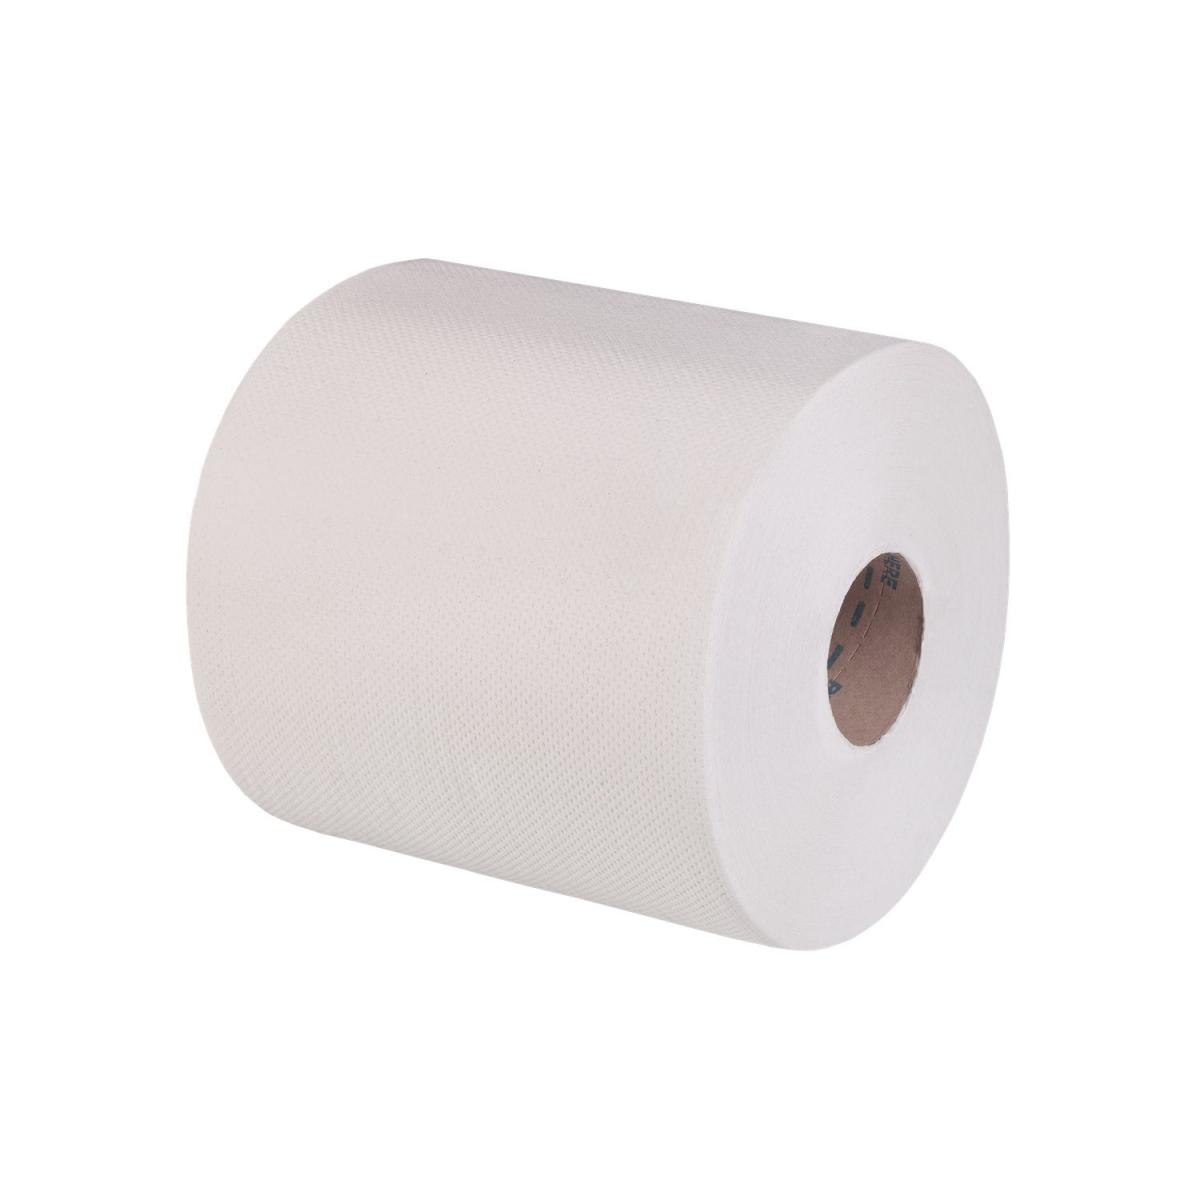 Toilettenpapier weiß, 3-lagig